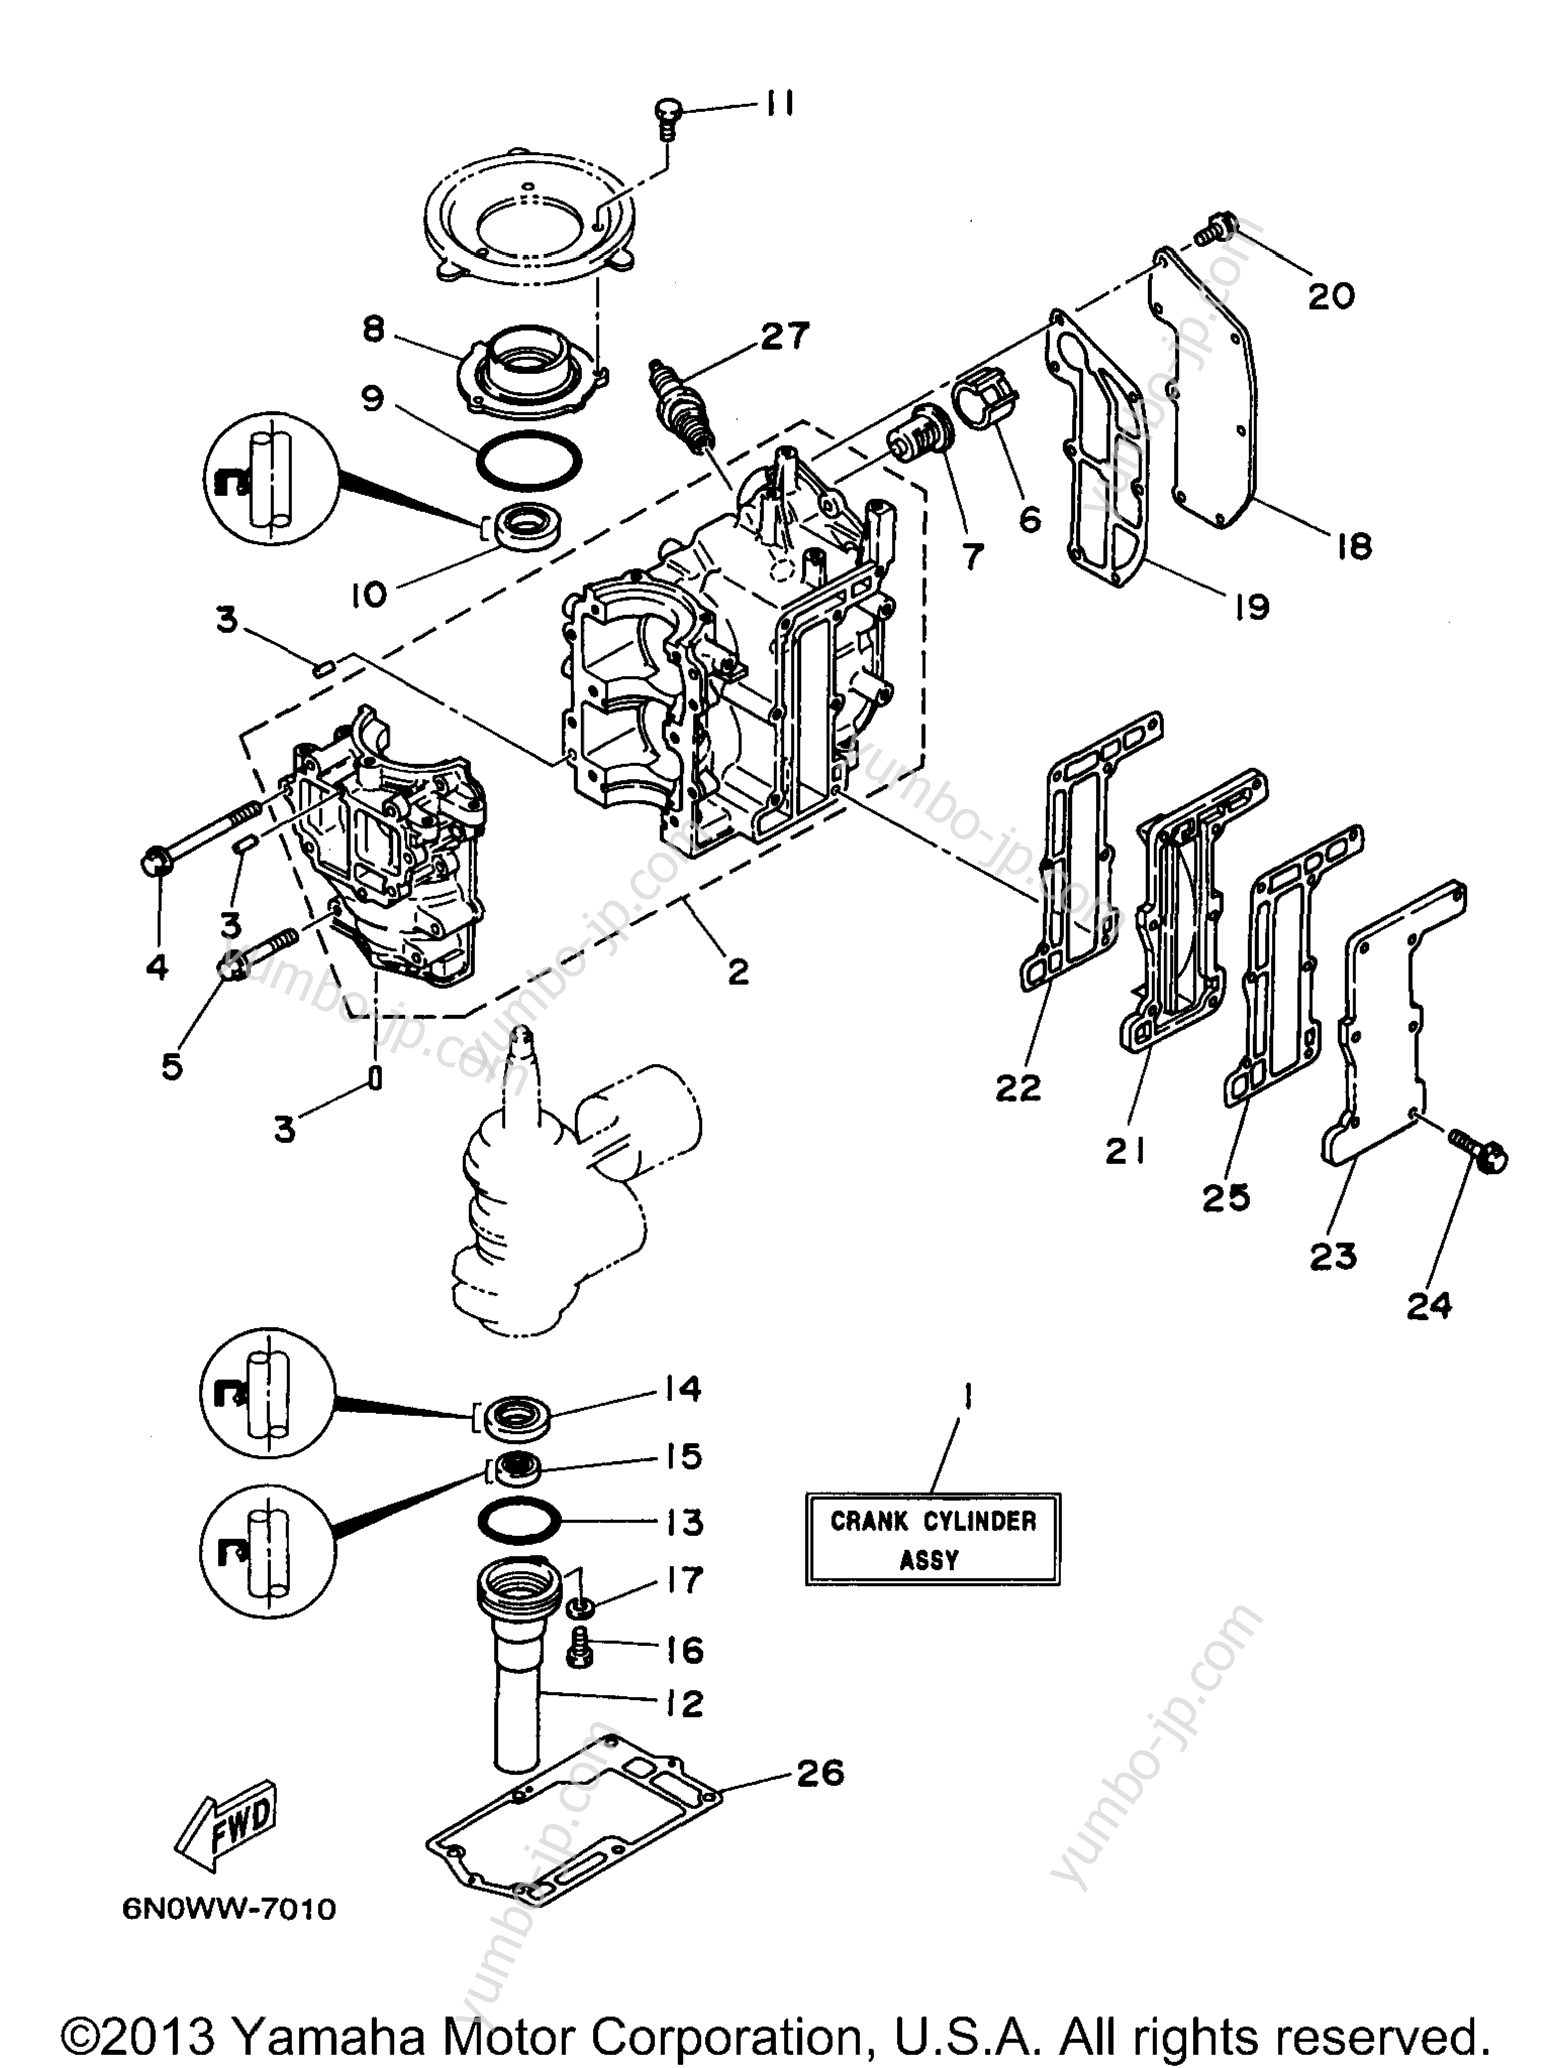 Cylinder Crankcase для лодочных моторов YAMAHA 8MSHV 1997 г.